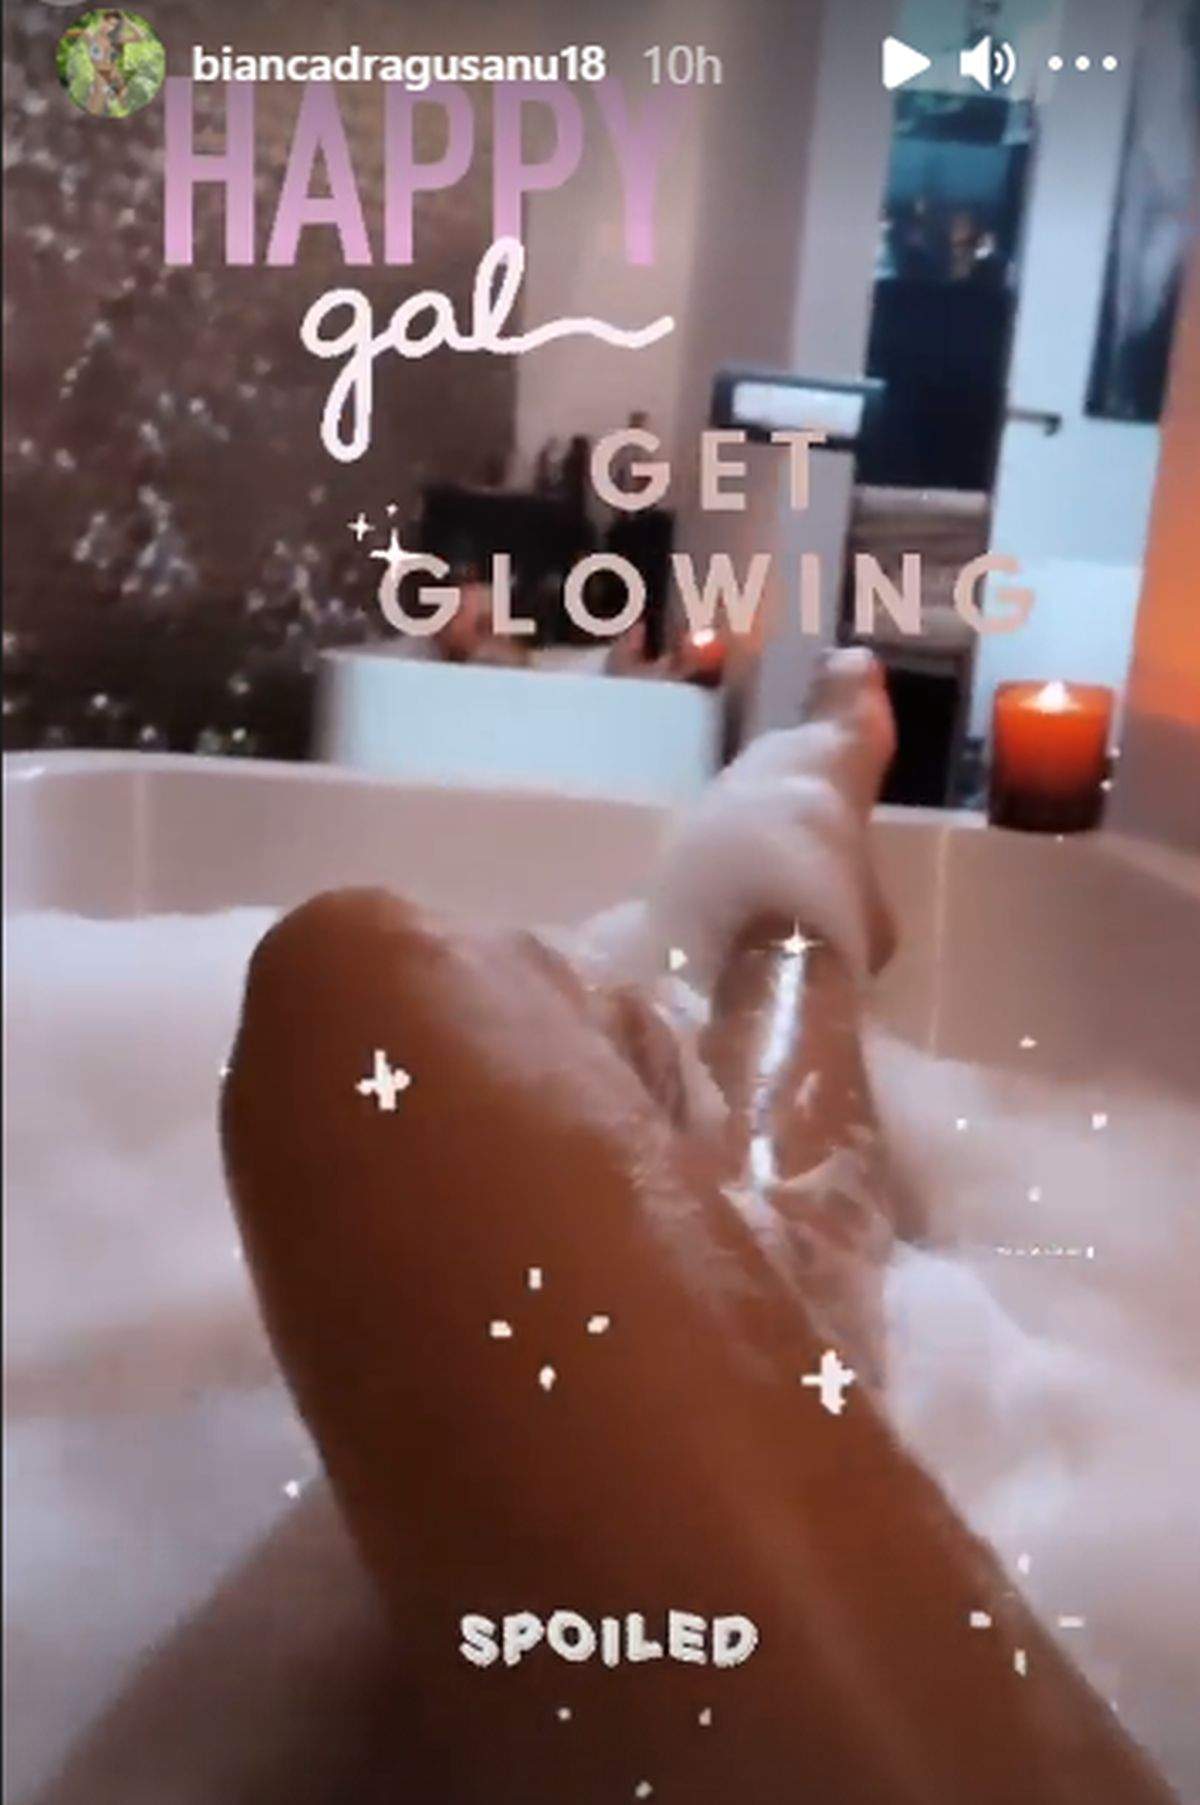 Bianca Drăgușanu aratandu-si picioarele in timp ce face baie in cada